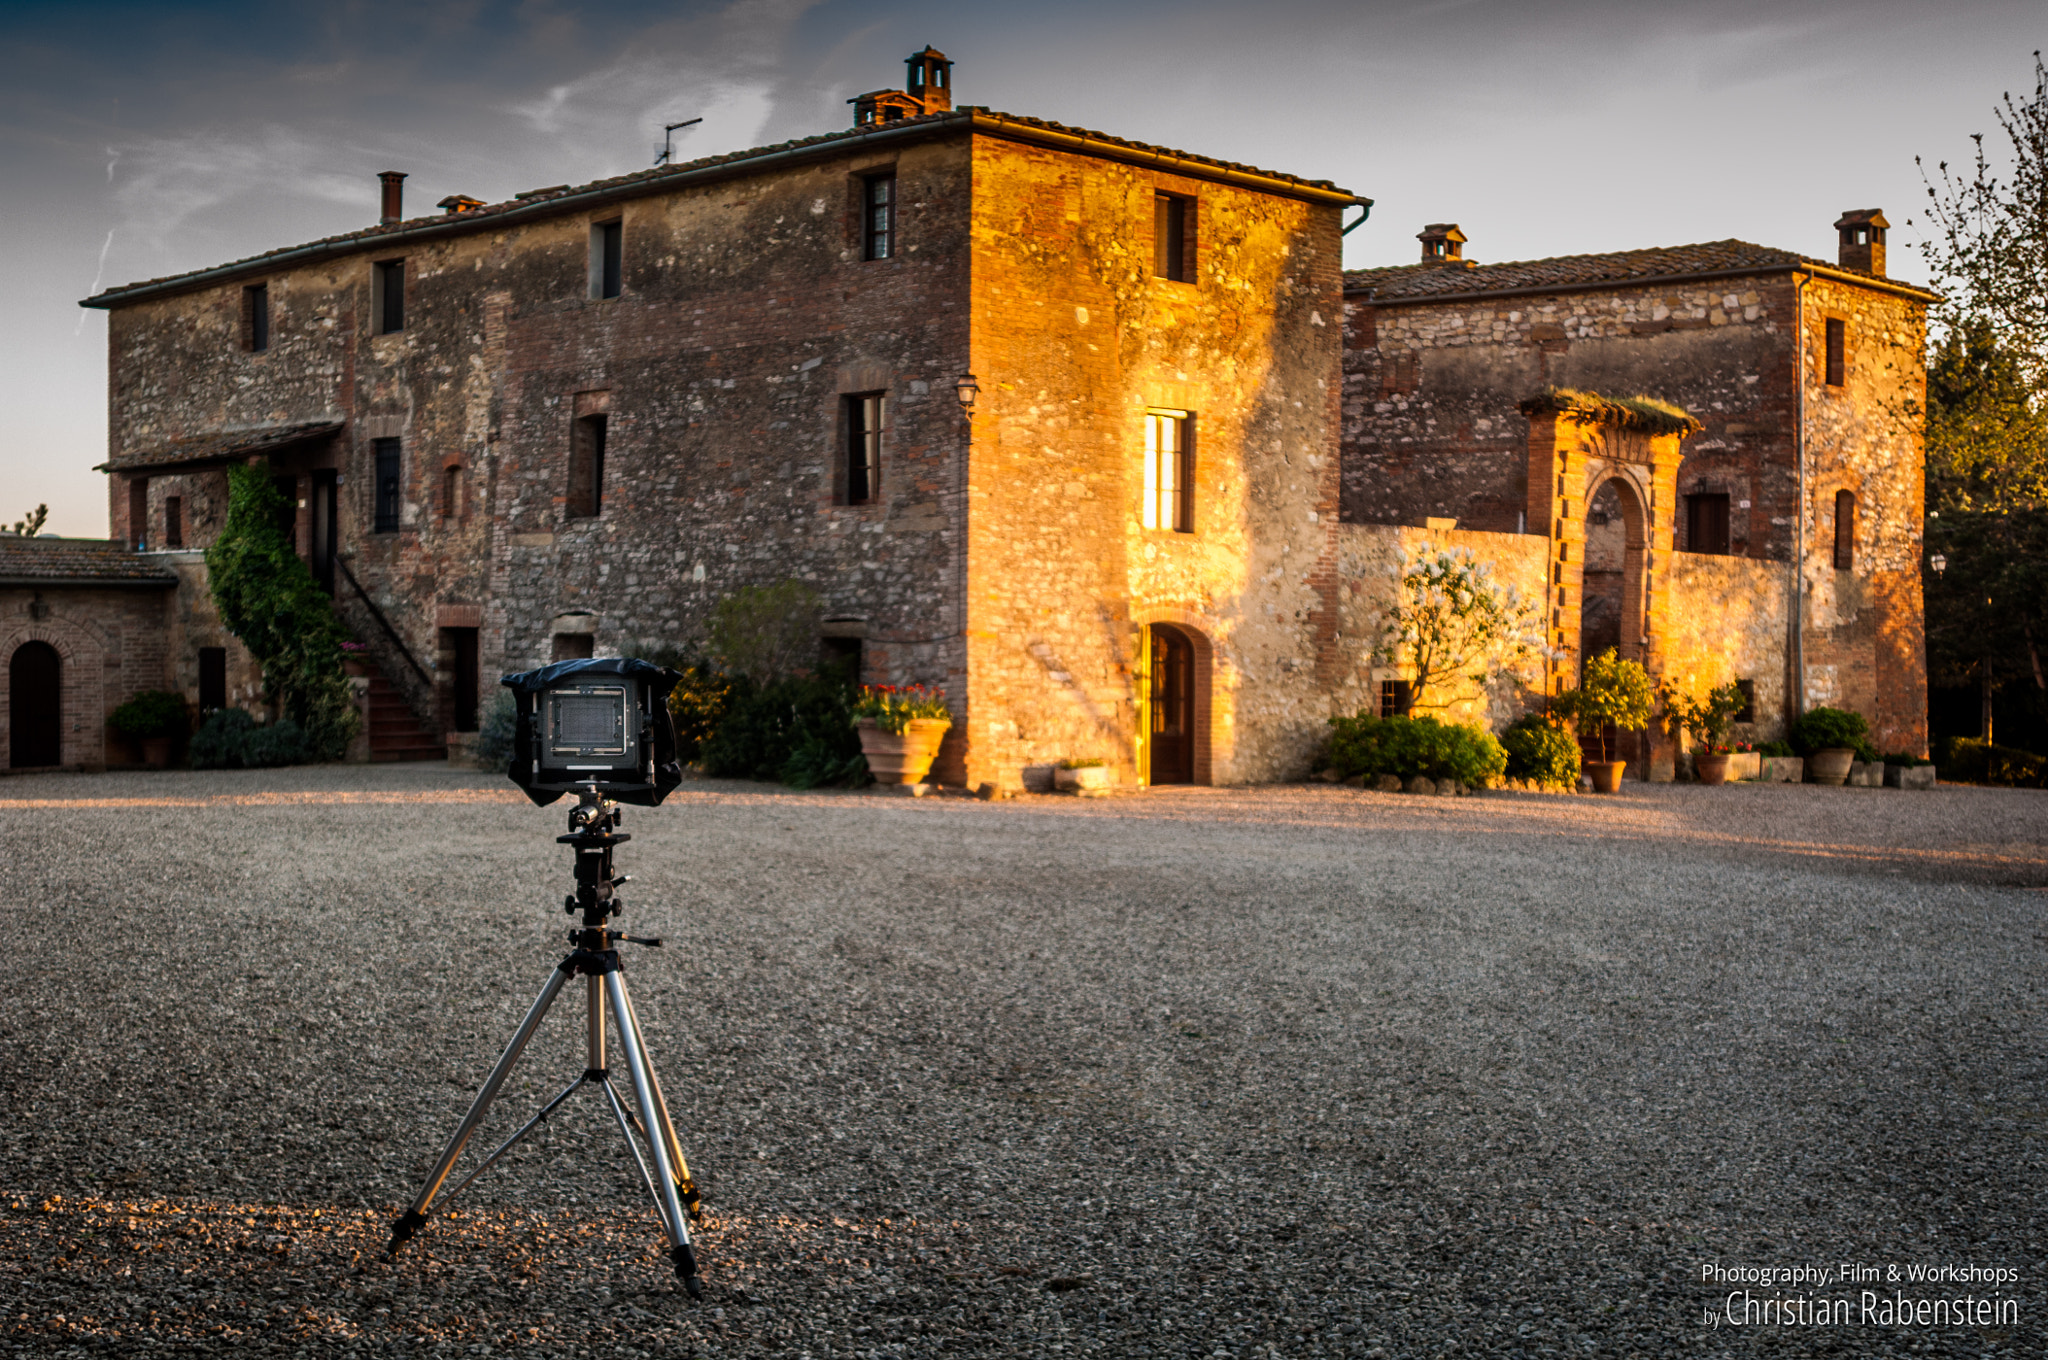 Nikon D2Xs + AF Zoom-Nikkor 28-85mm f/3.5-4.5 sample photo. Photo workshop toscana photography